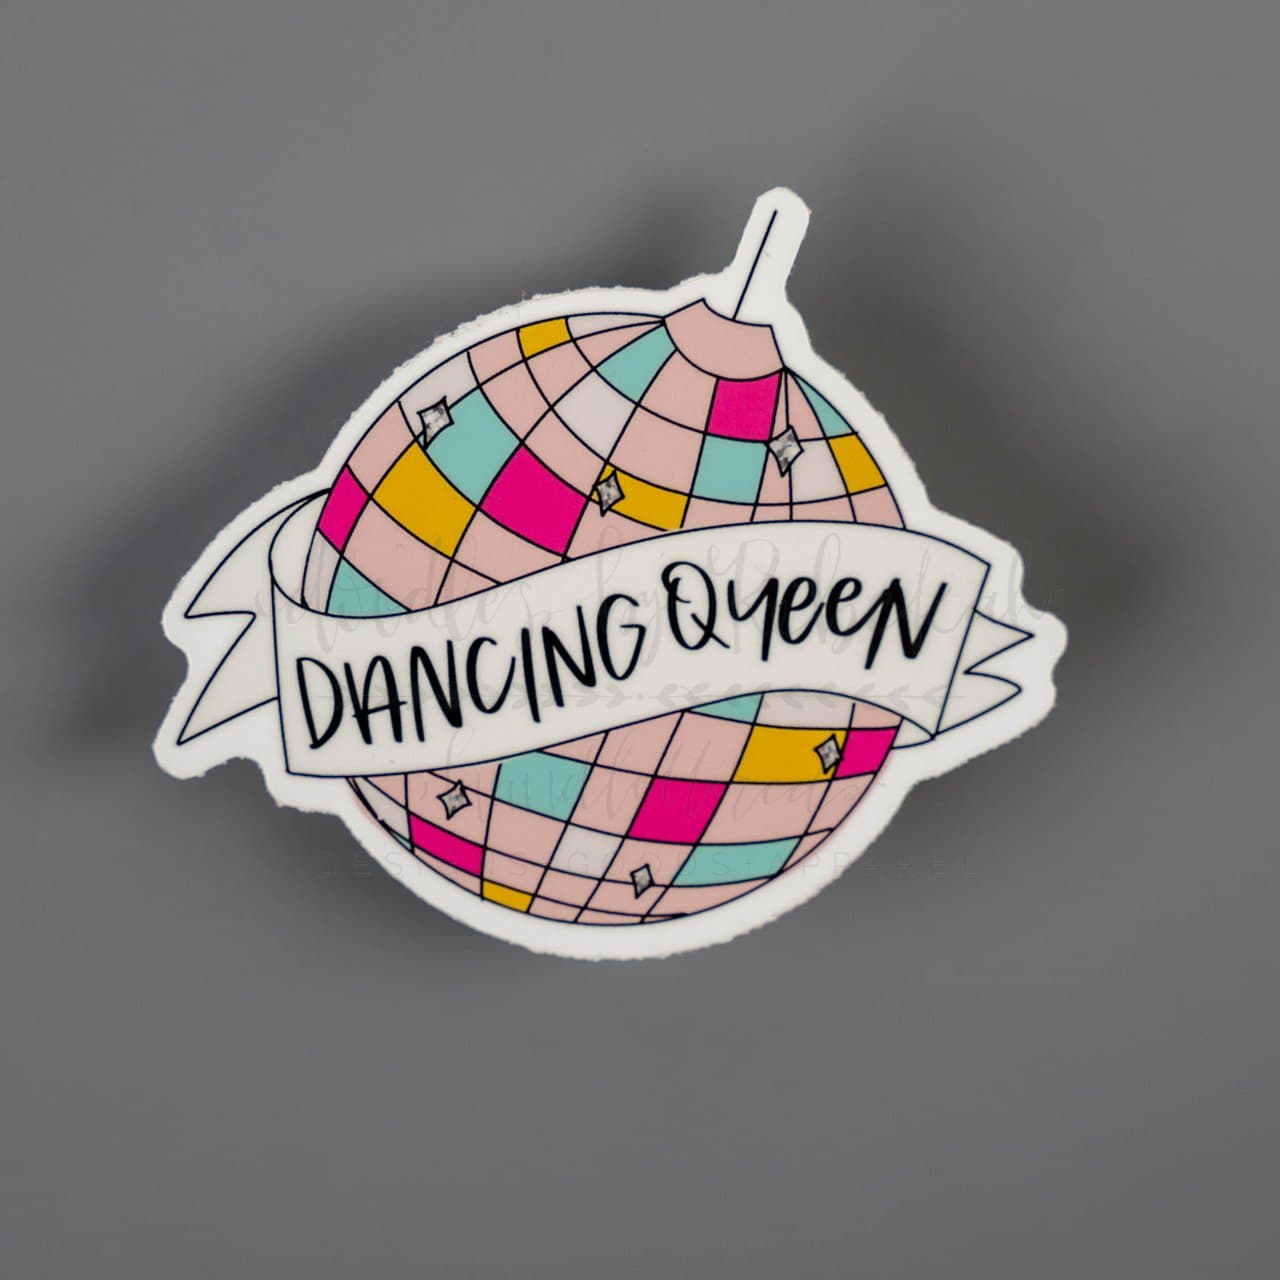 Dancing Queen Crown Sticker - Dancing Queen Crown Queen - Discover